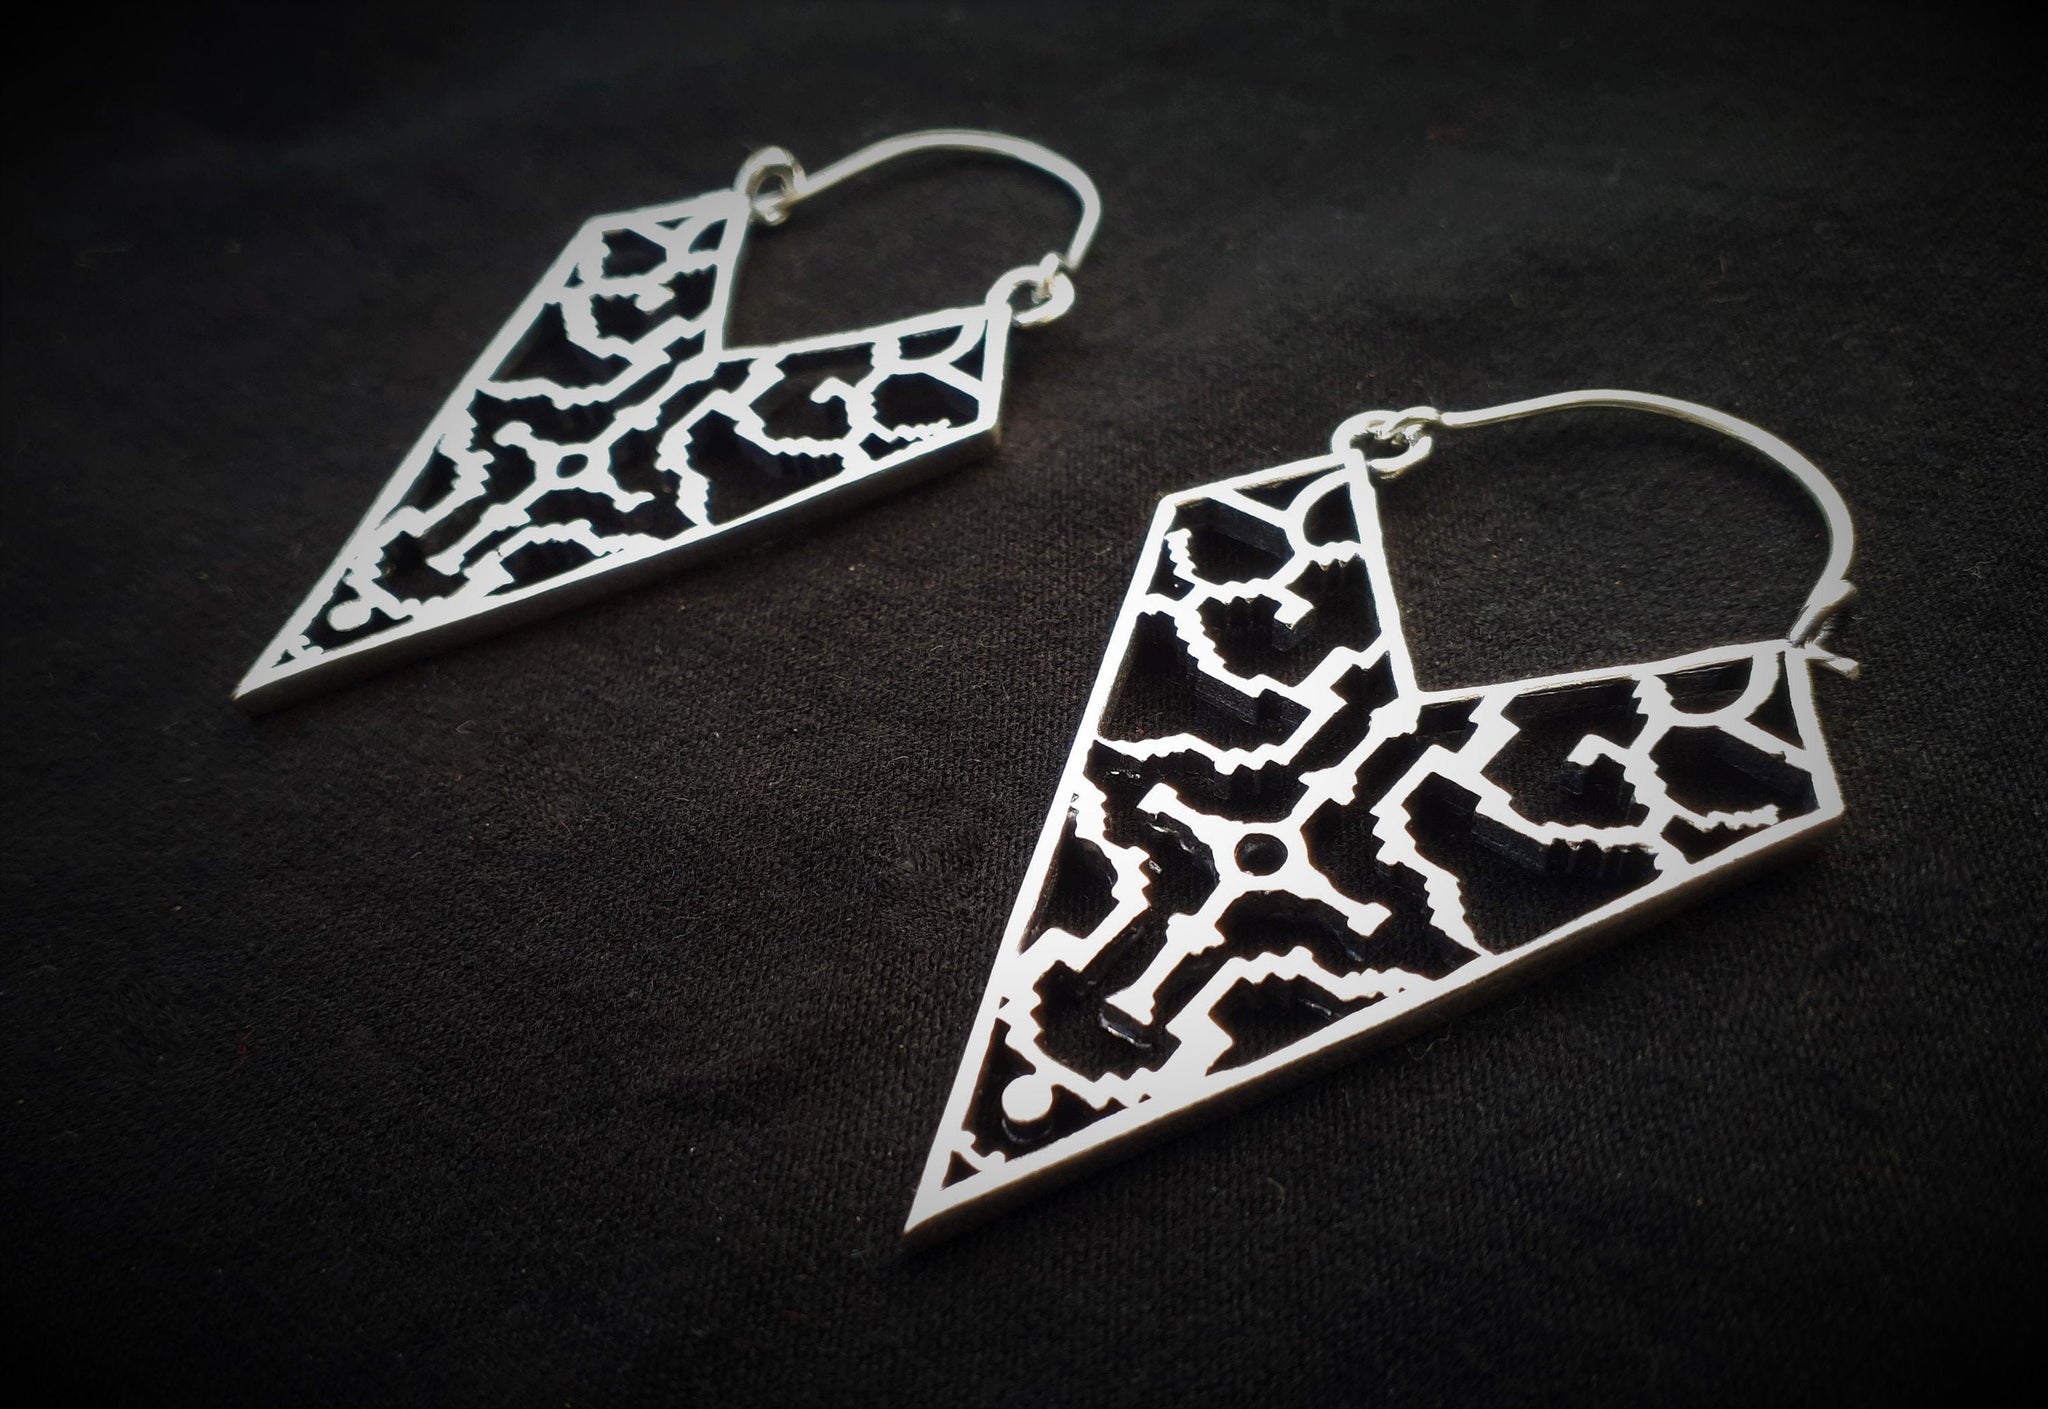 SHIPIBO Silver Earrings - Ayahuasca Earrings, Tribal Earrings, Brass Earrings, Gypsy Earrings, Sacred Geometry Earrings, Tribal Jewelry, Psy